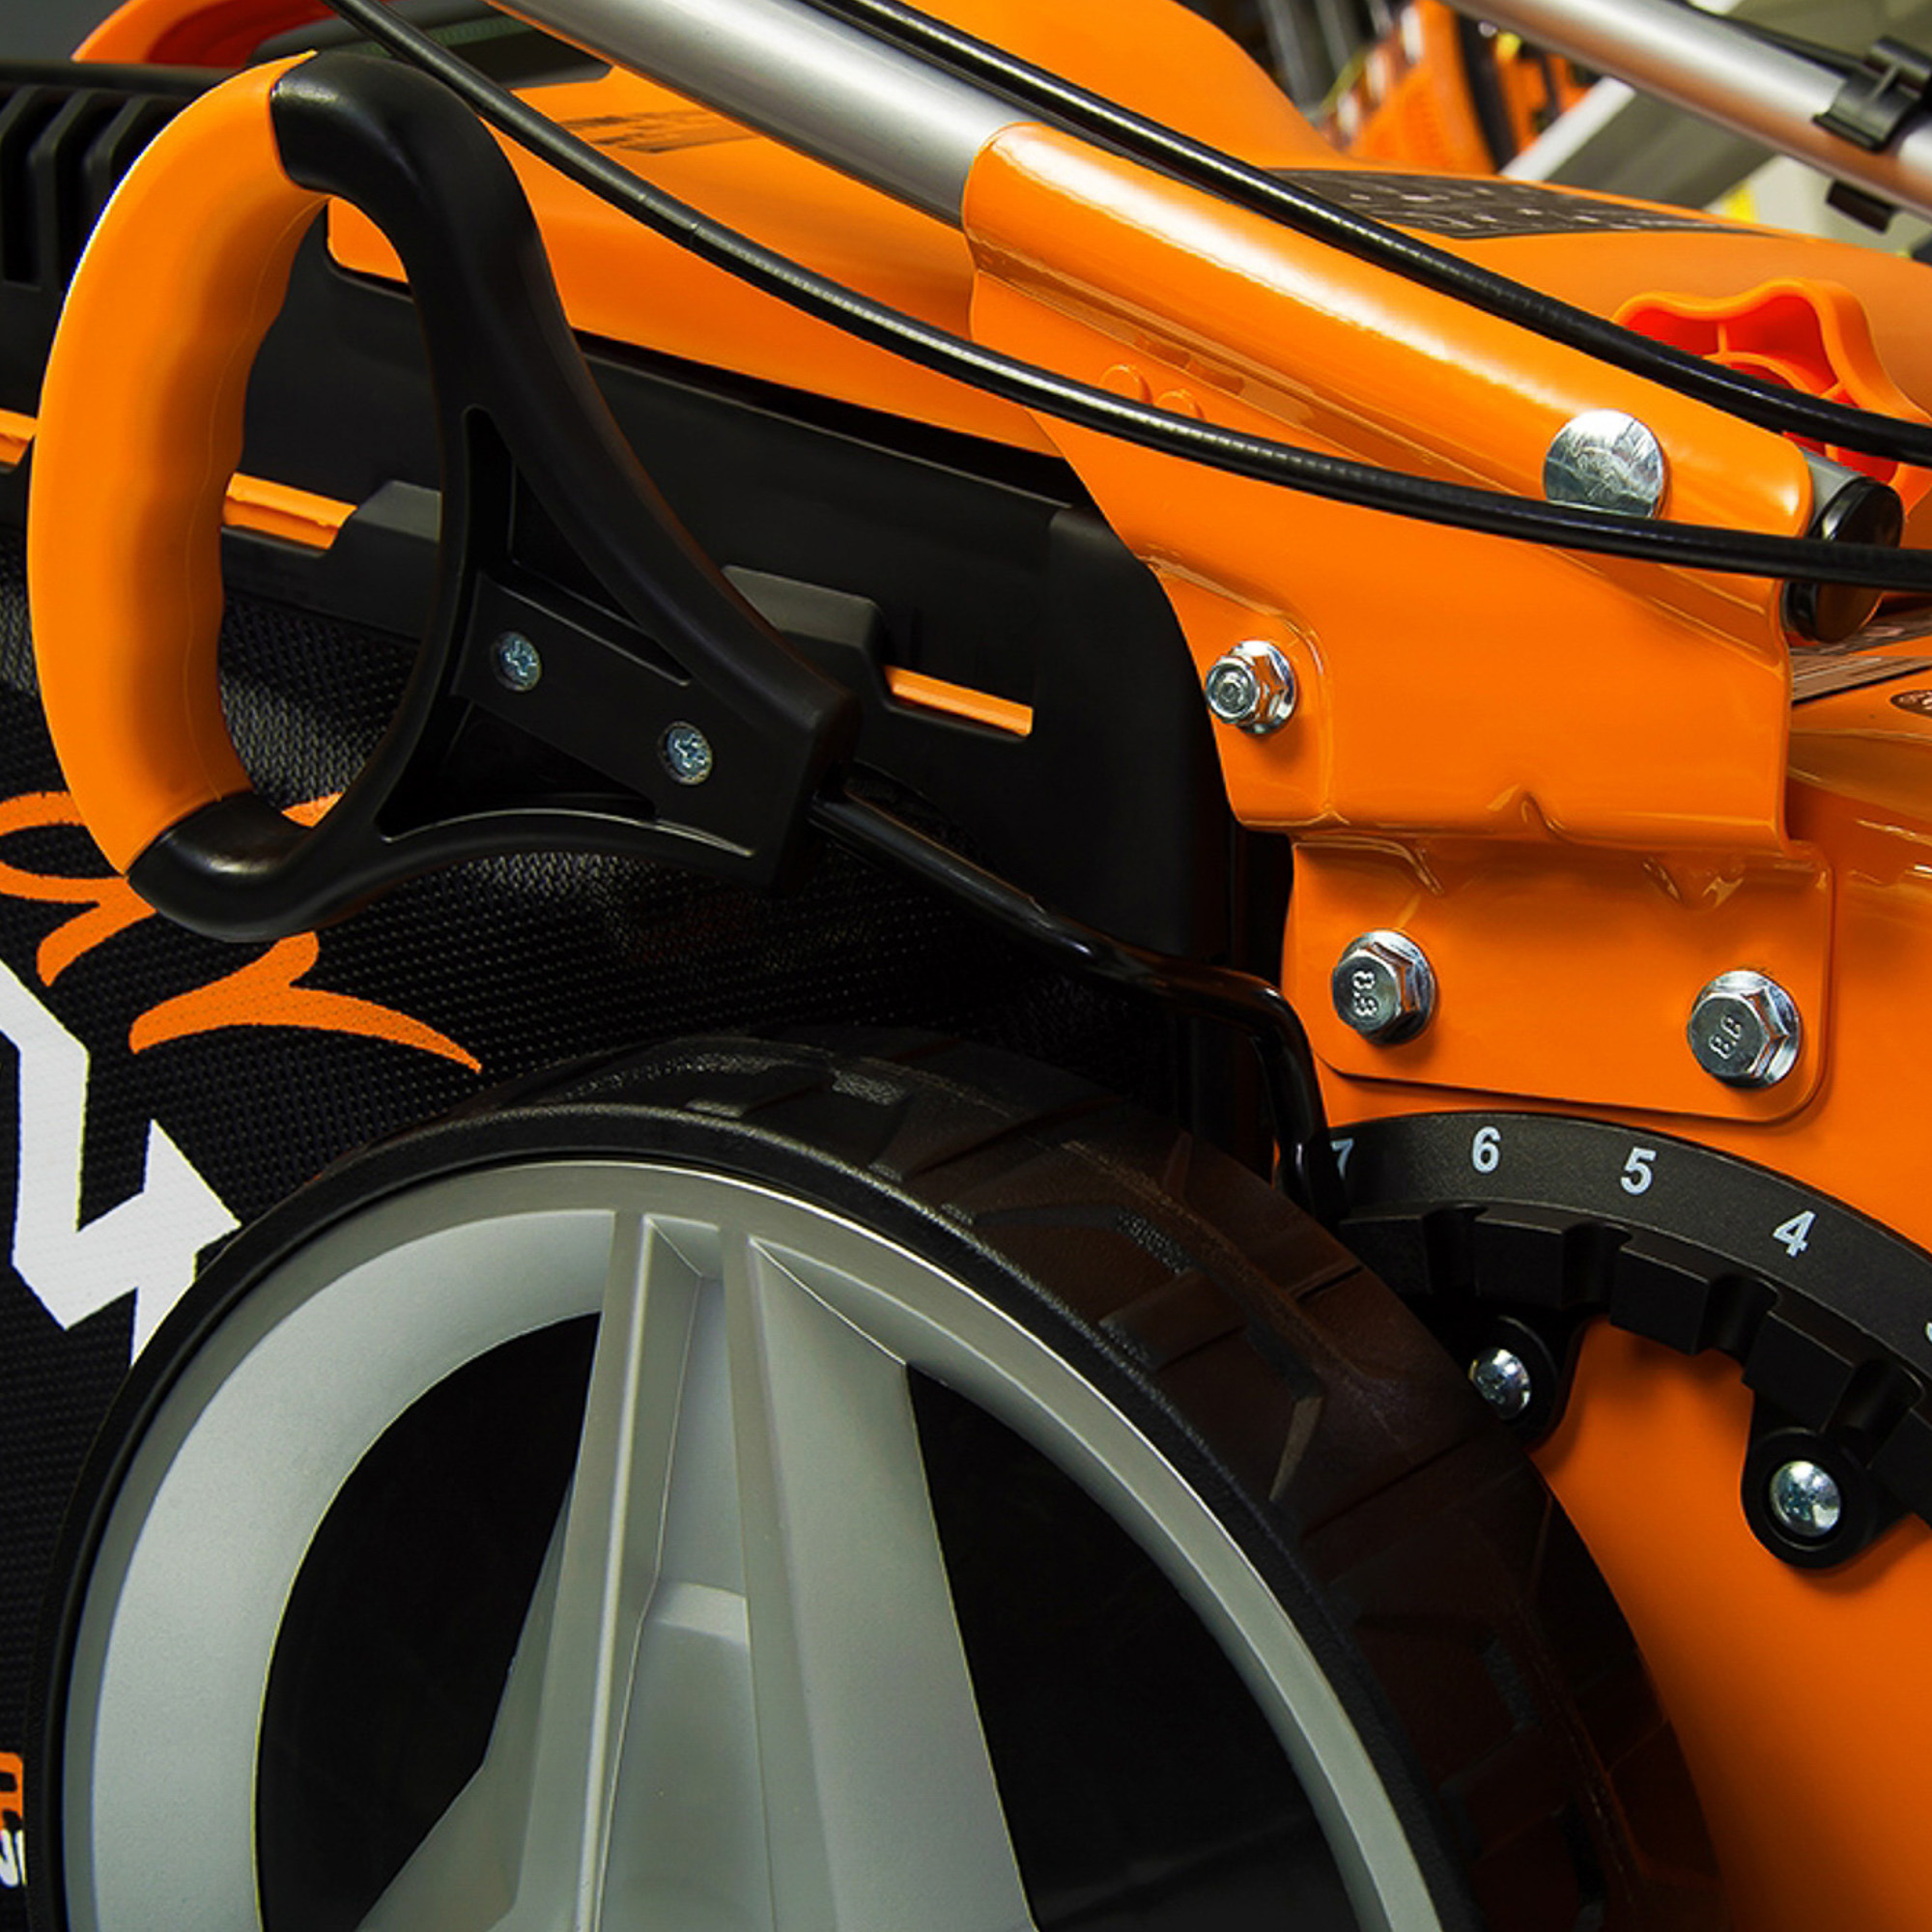 Газонокосилка Daewoo DLM 5100SR, цвет оранжевый DLM5100SR - фото 7